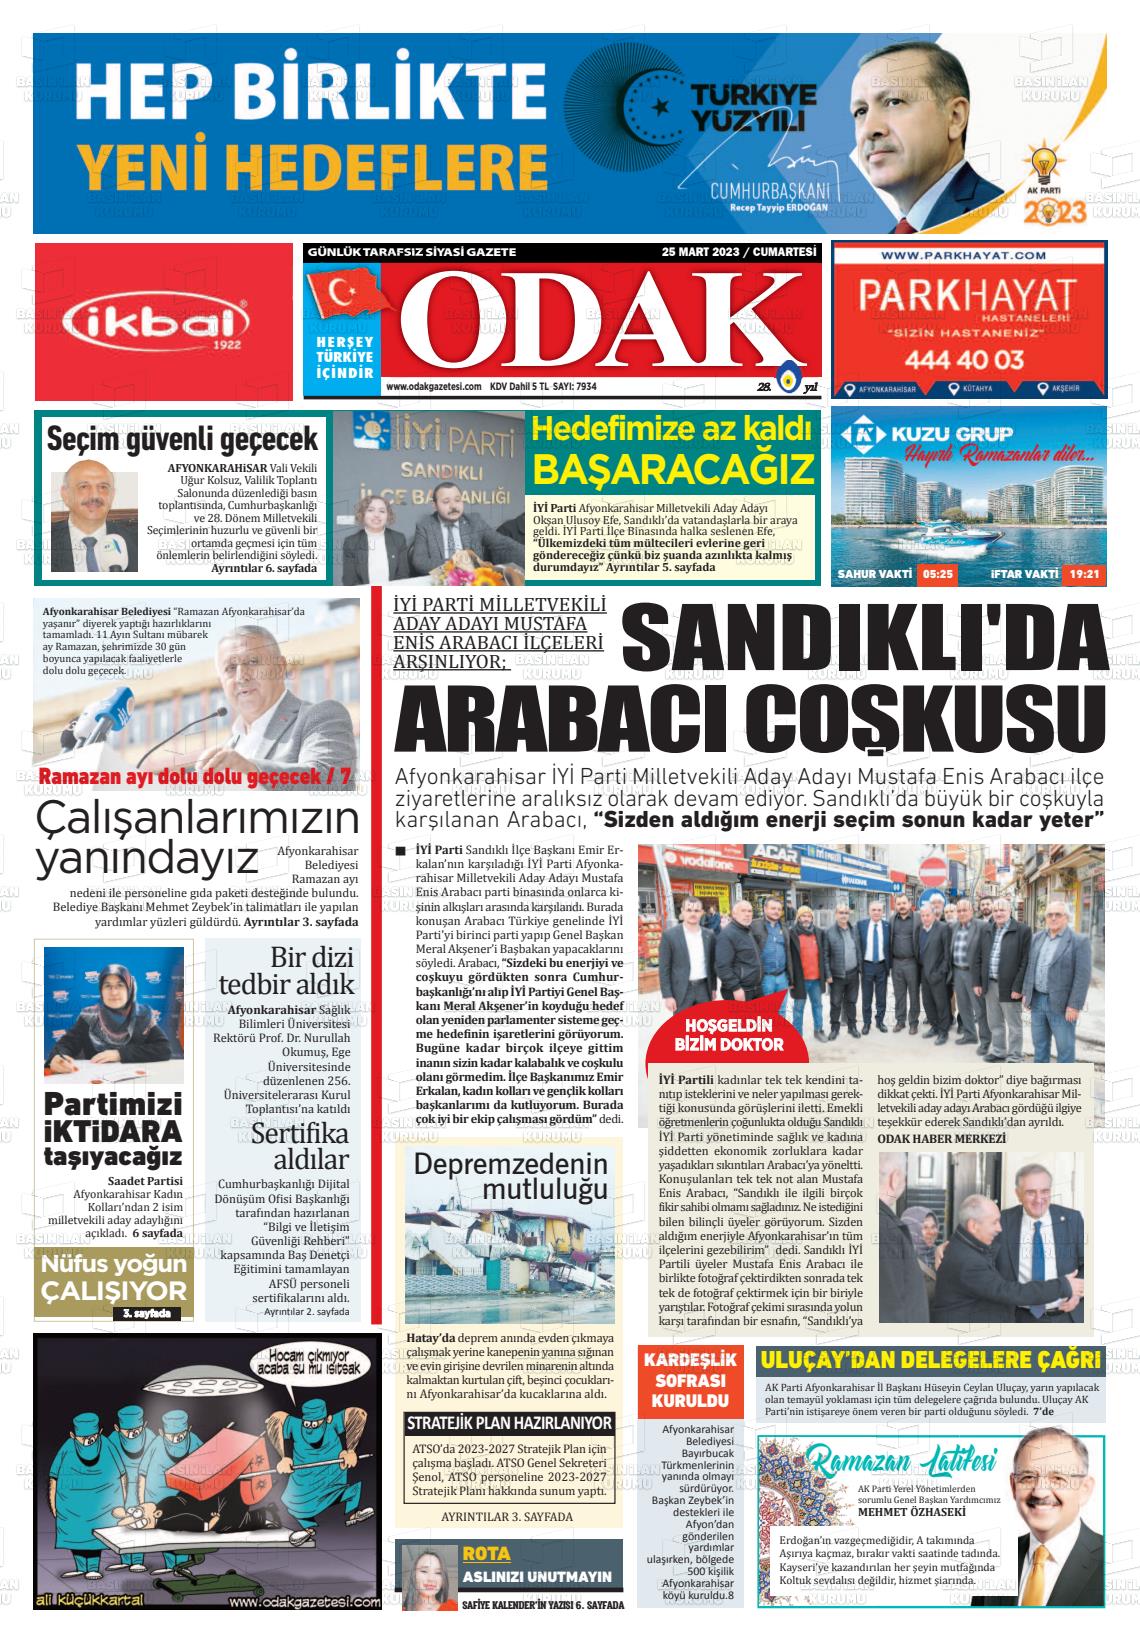 25 Mart 2023 Odak Gazete Manşeti